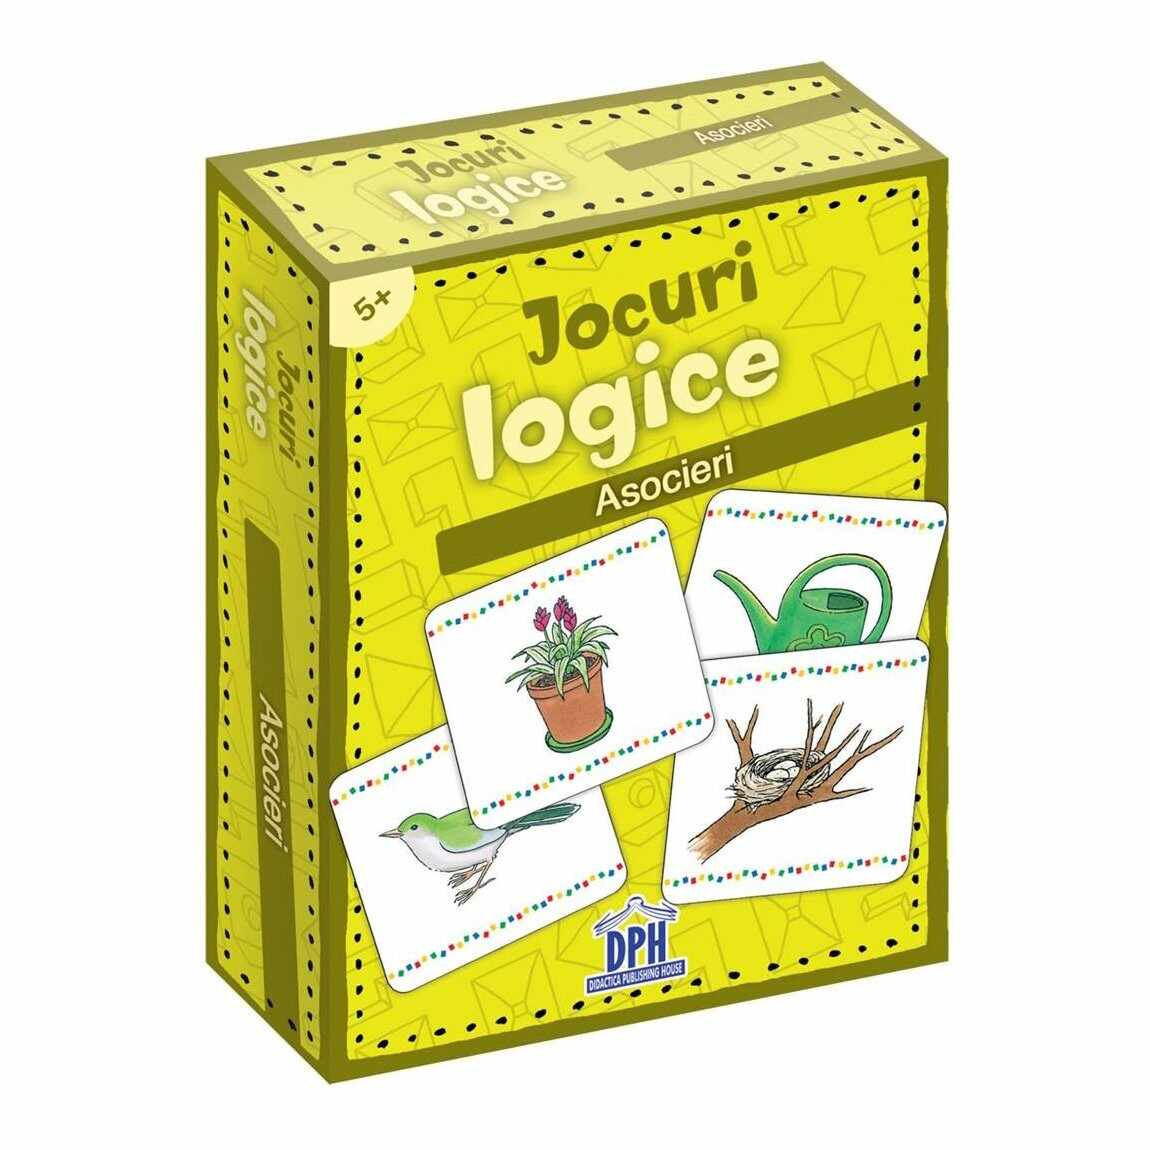 Jocuri logice, Asocieri, Editura DPH, 48 jetoane